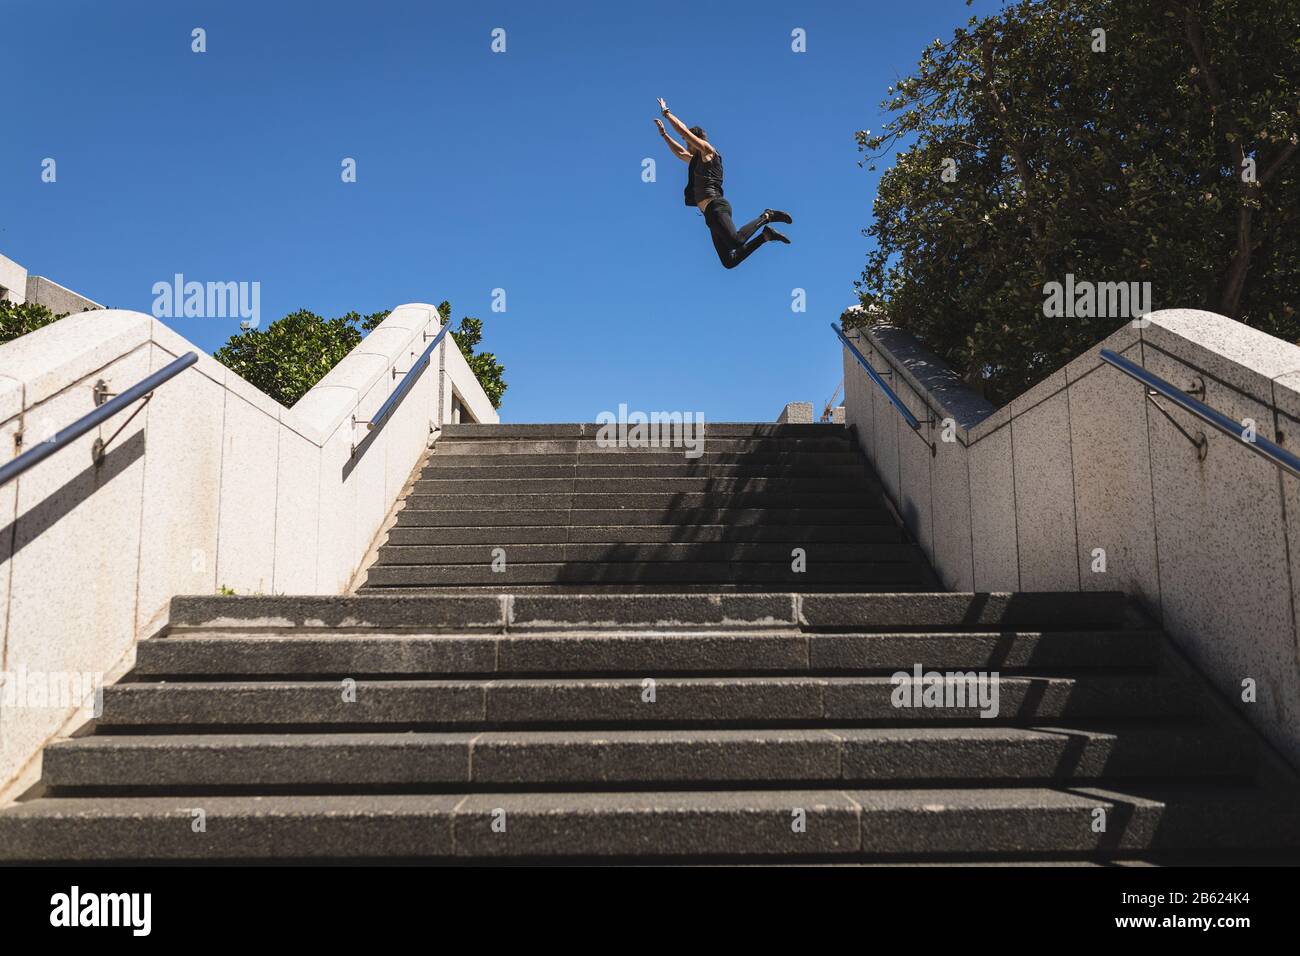 Kaukasischer Mann springt auf eine Treppe Stockfoto